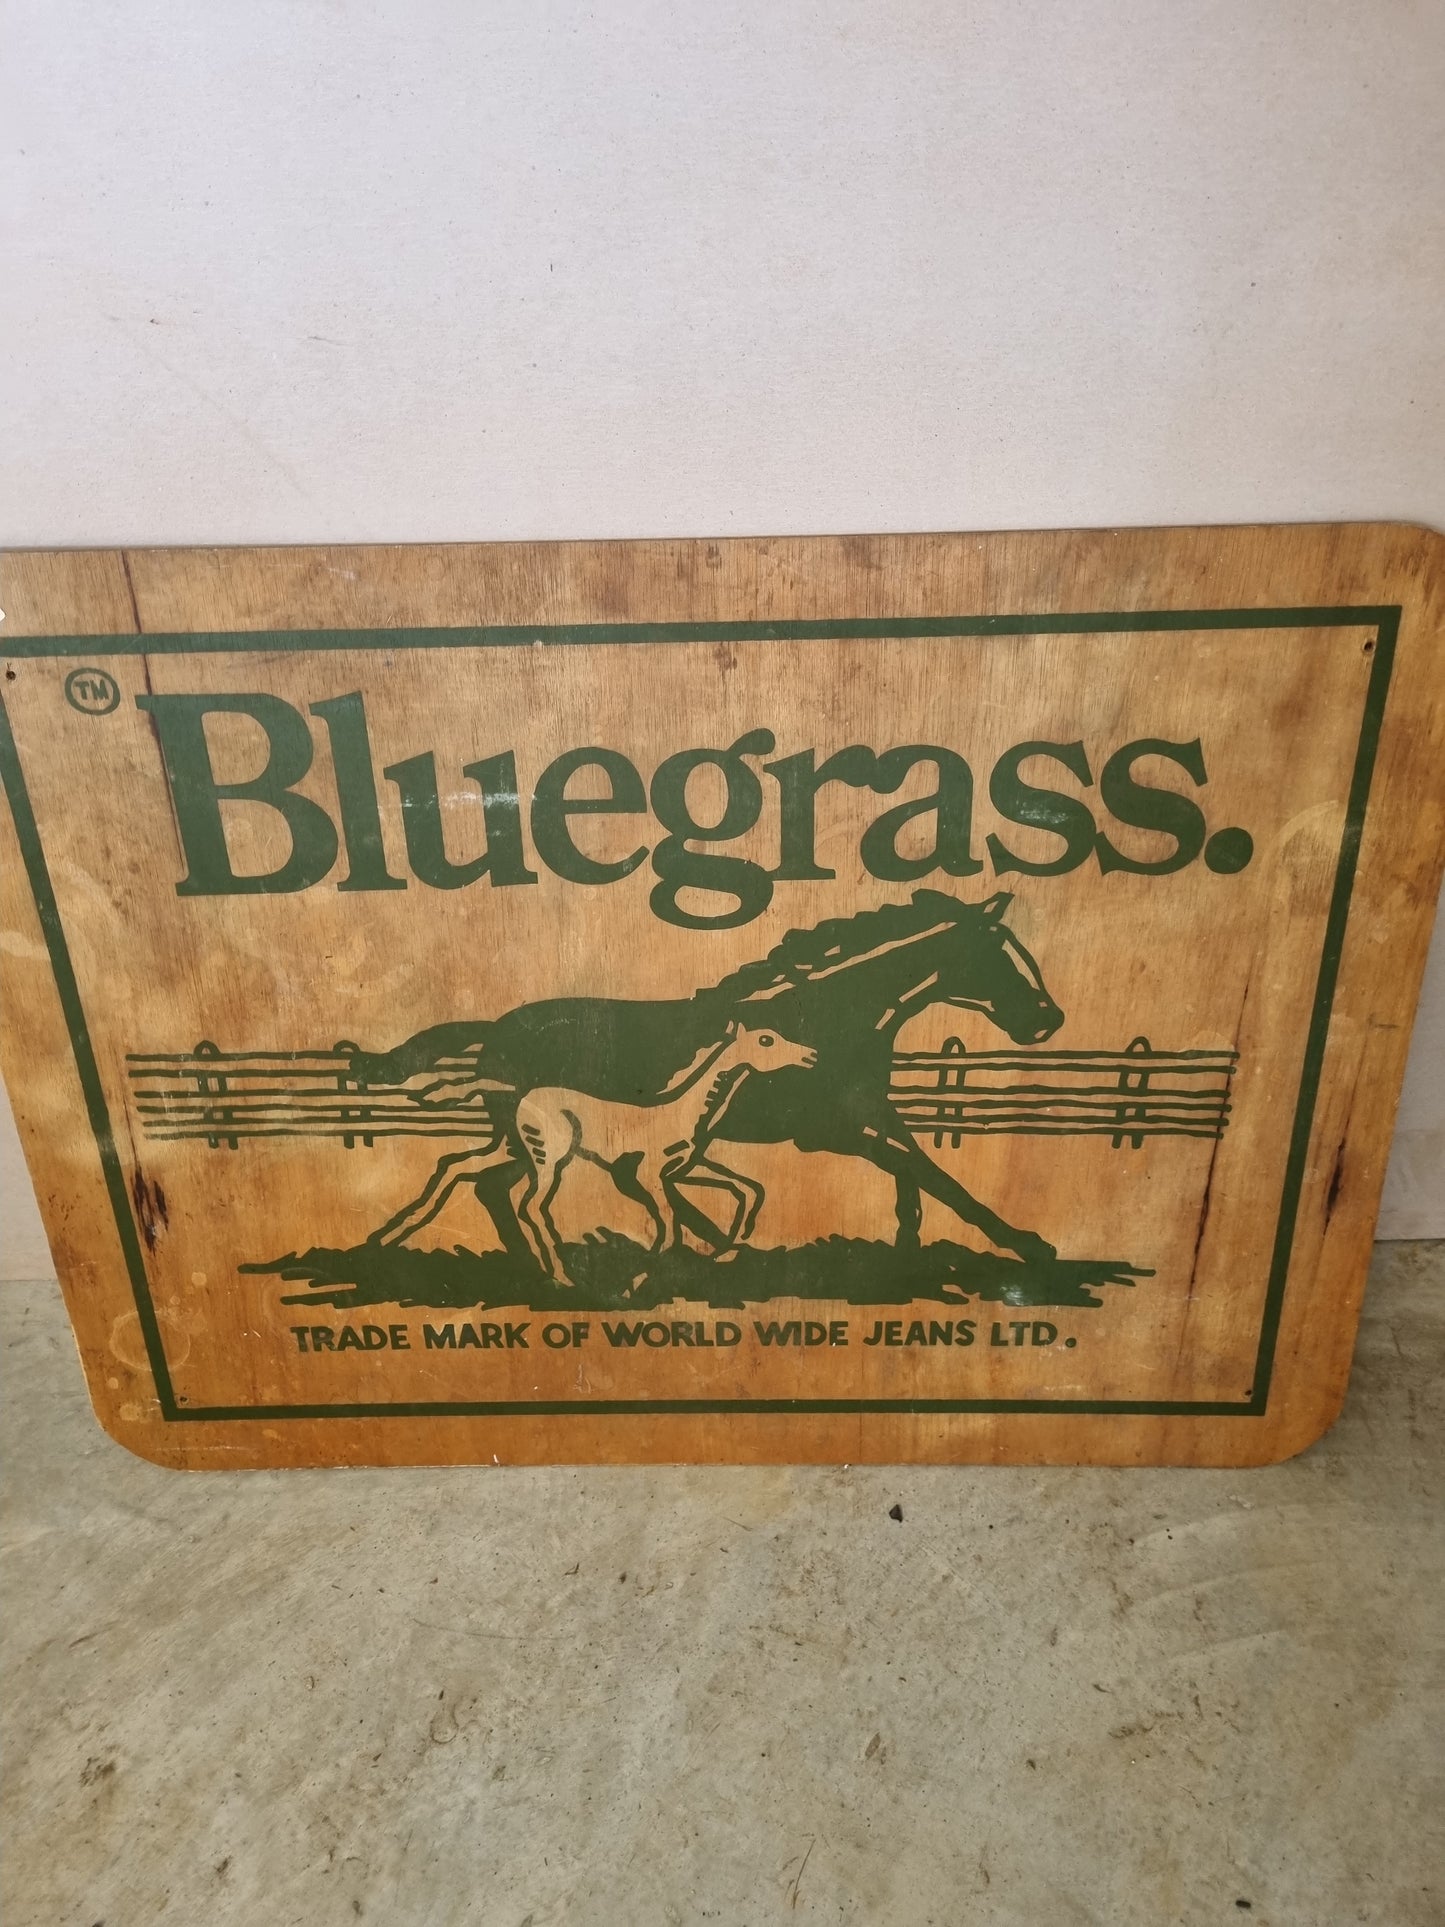 Bluegrass jeans sign timber mancave